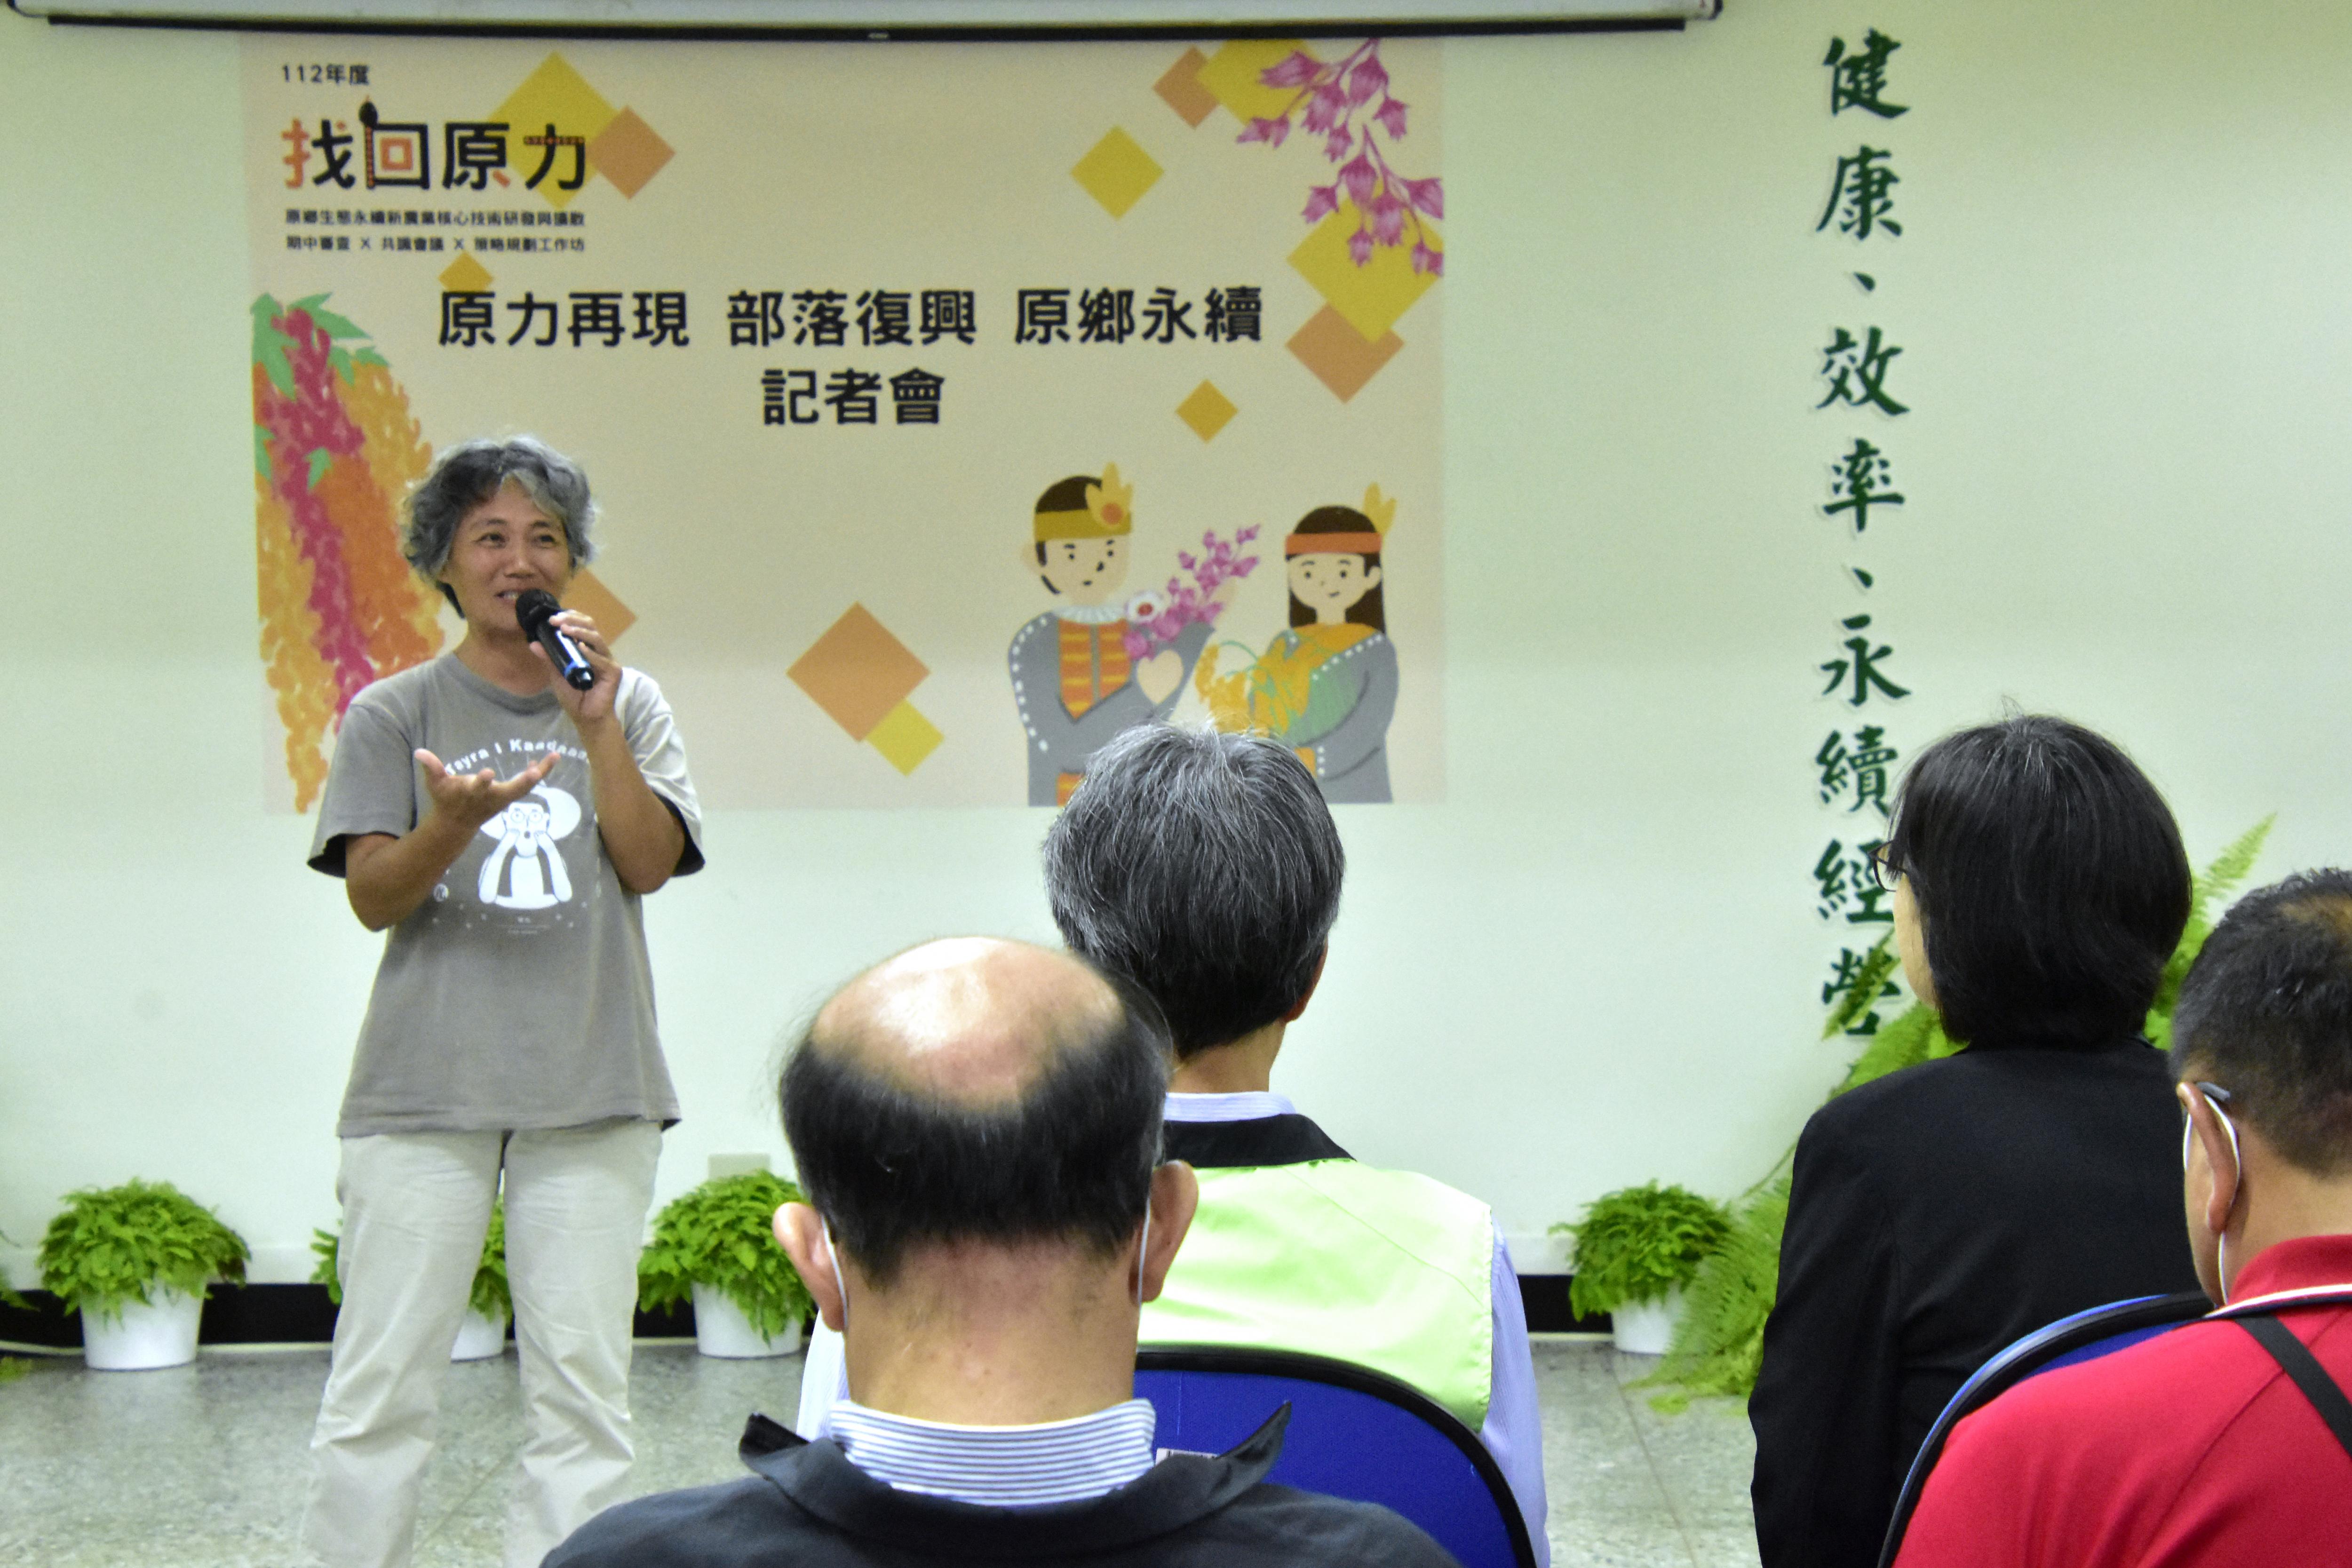 電光部落潘寶瑩分享和臺東場合作的經驗